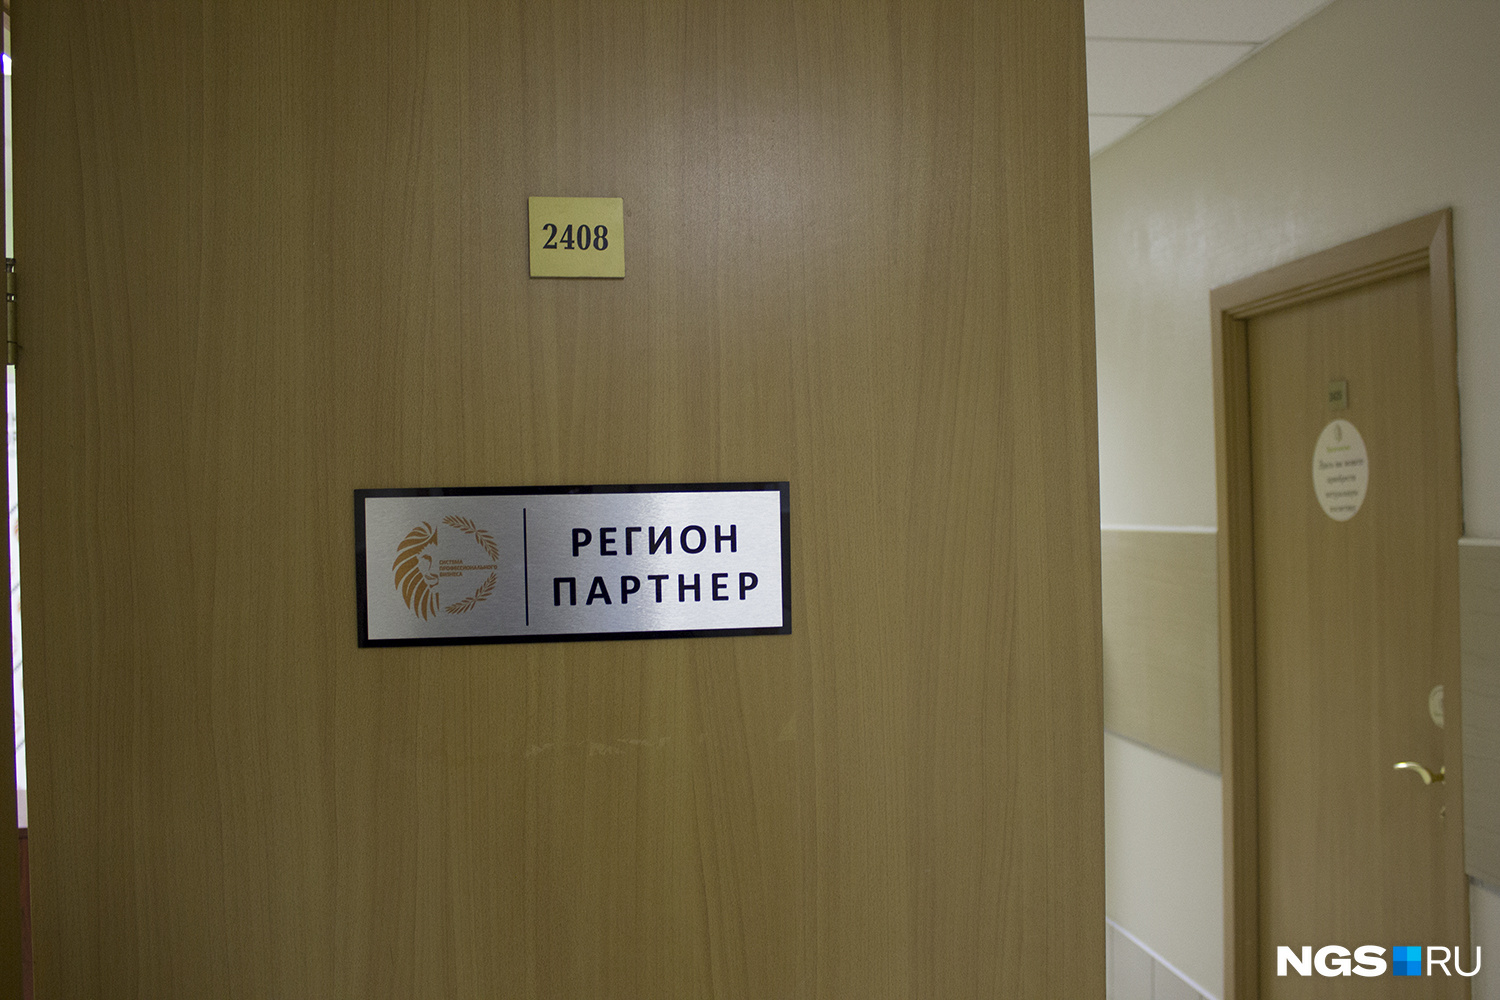 Вход в офис компании «Регион партнер», где корреспондент НГС прошел собеседование